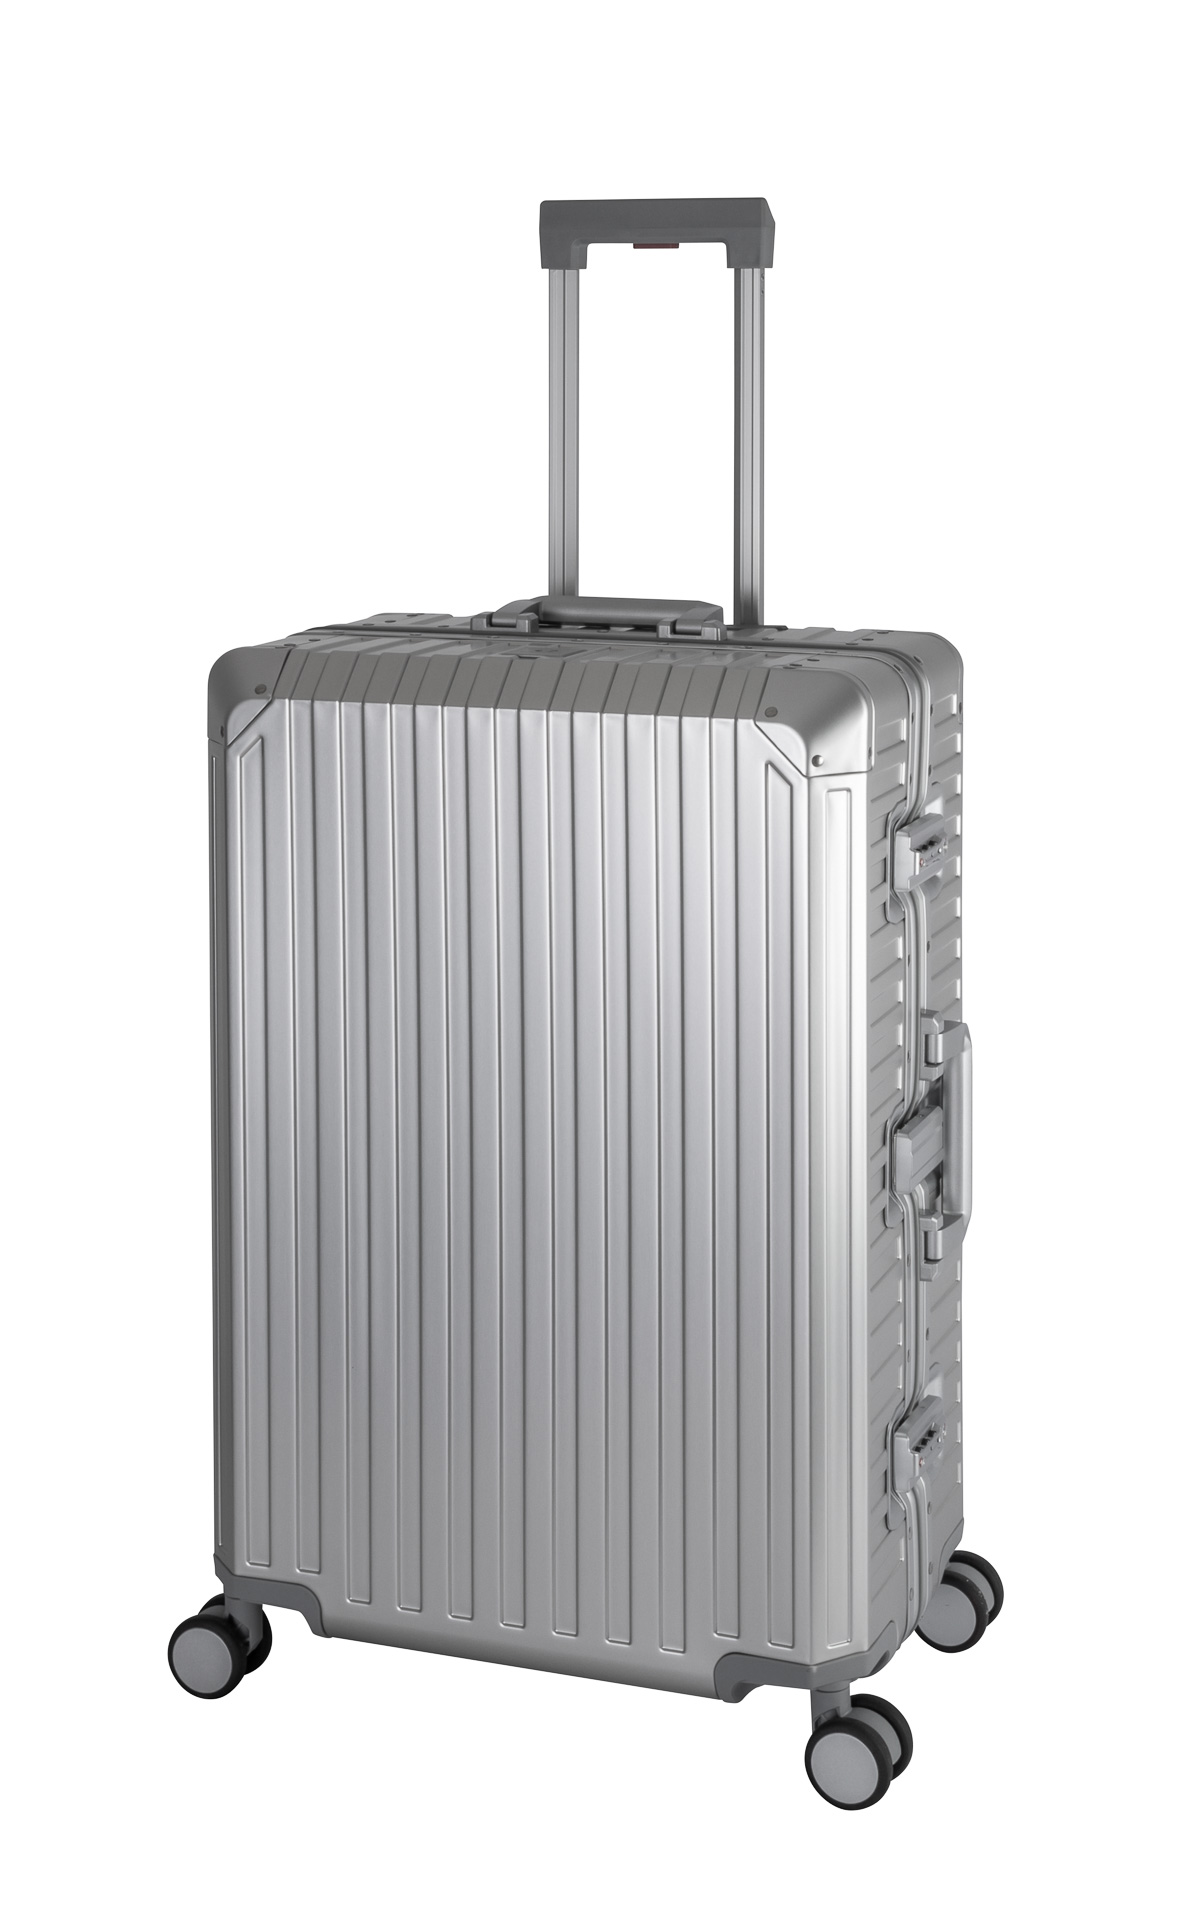 Großer Aluminium Koffer Premium 4 Rollen Trolley Alu-Reise-Koffer L Silber  - online kaufen.